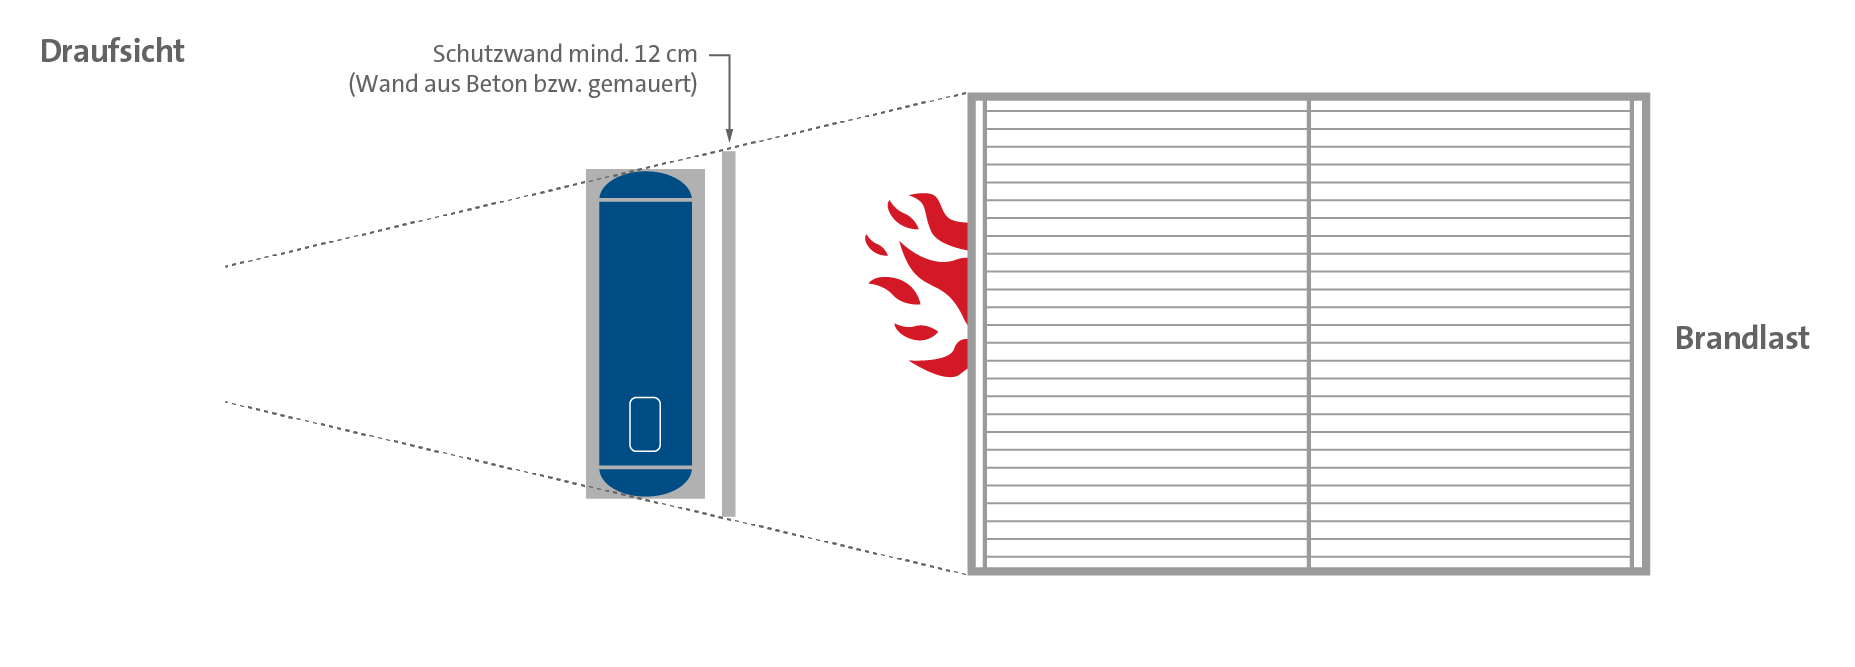 Schaubild: Draufsicht von einem Flüssiggastank, der durch eine Schutzwand gegen Brandlast geschützt ist.